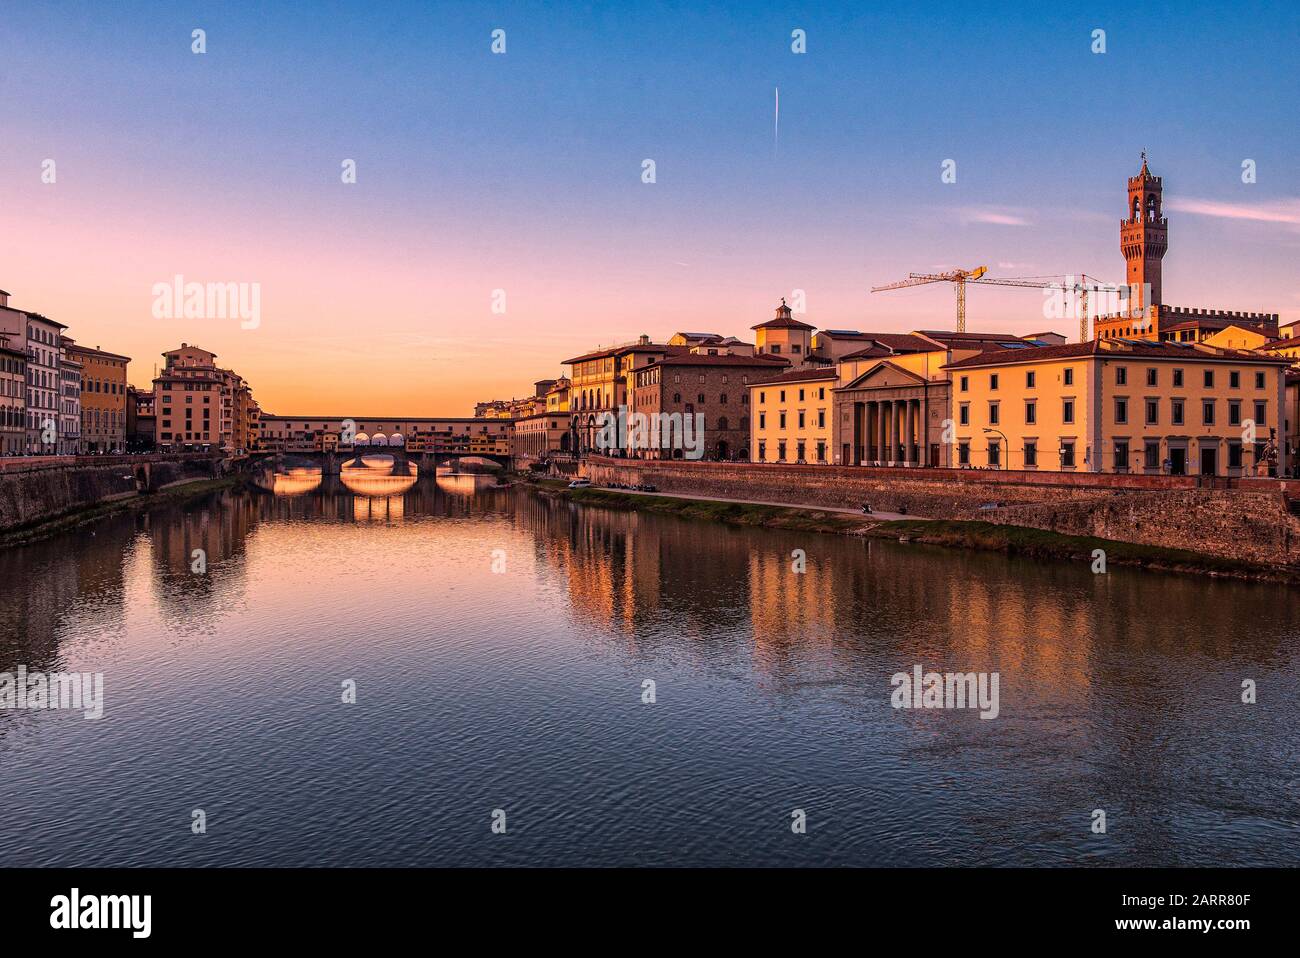 Firenze, Toskana, Italien. Postkartenbild bei Sonnenuntergang von Florenz. Der Arno-Fluss, die Ponte Vecchio und links der Palazzo Vecchio Stockfoto